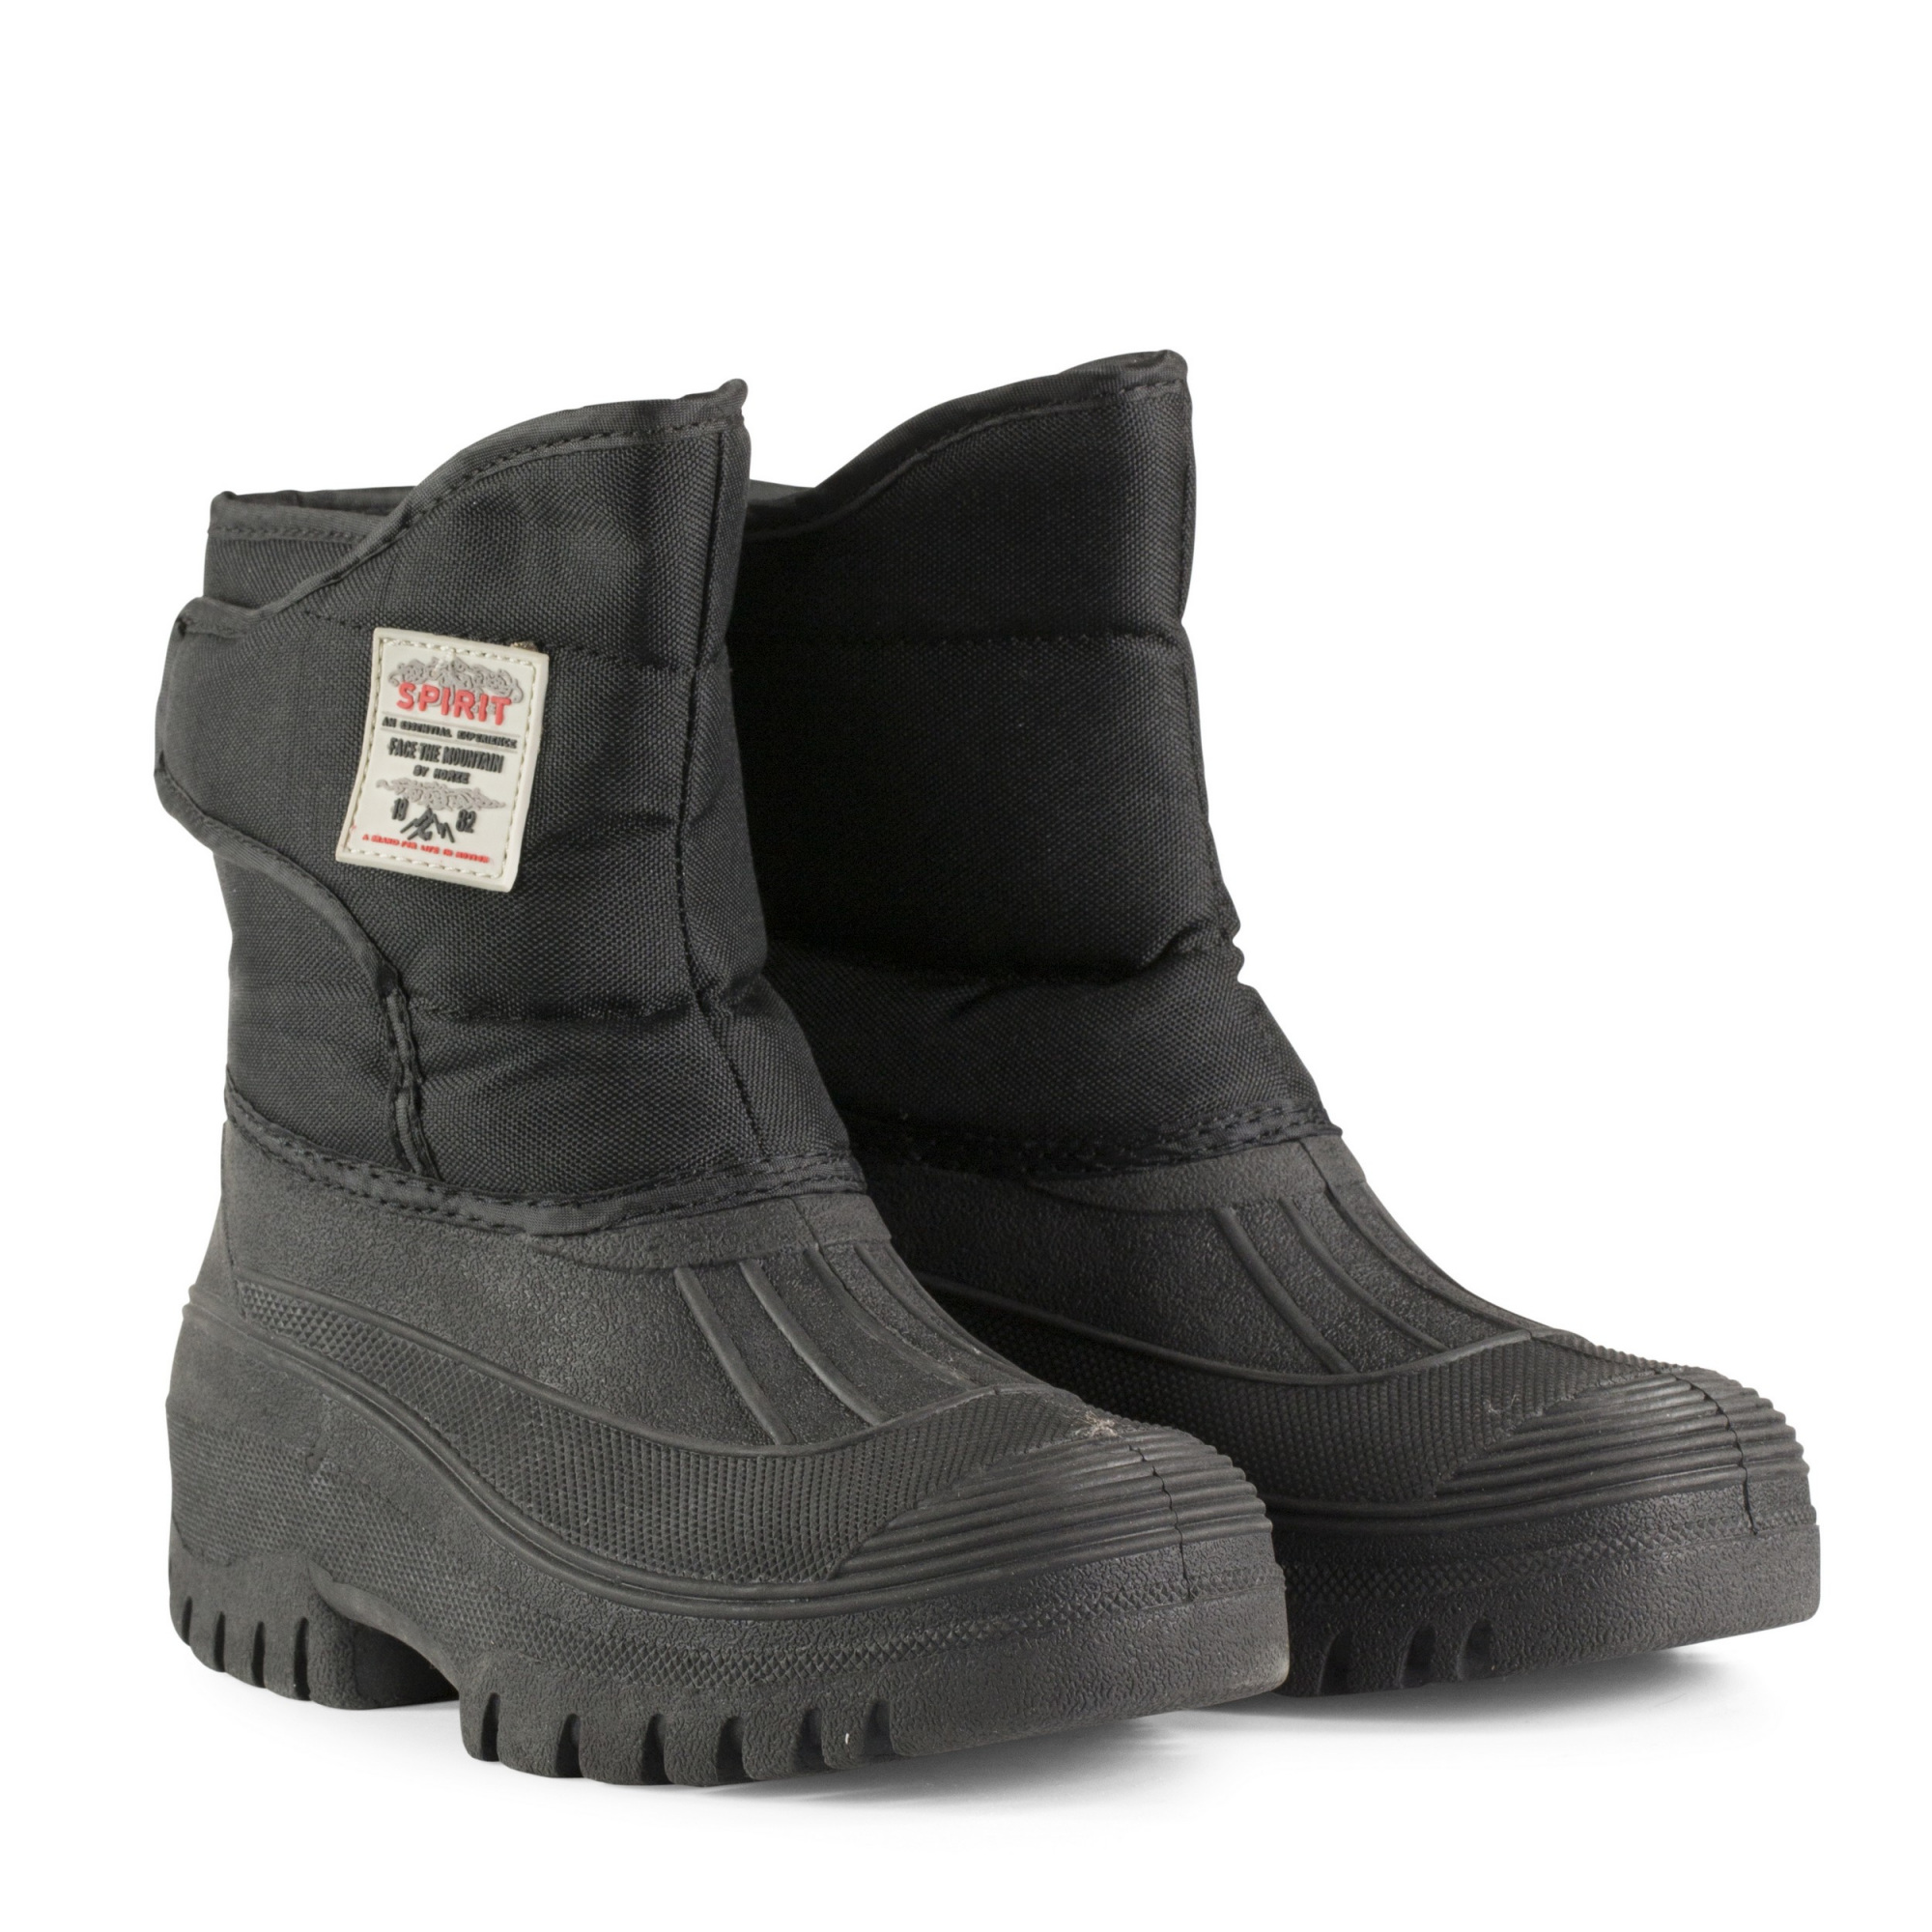 HORZE Leder Paddock Stiefel Anti-Rutsch Anti-Statik Stahlkappe für das Reiten bei Regenwetter CE20345 SB Zertifiziert 